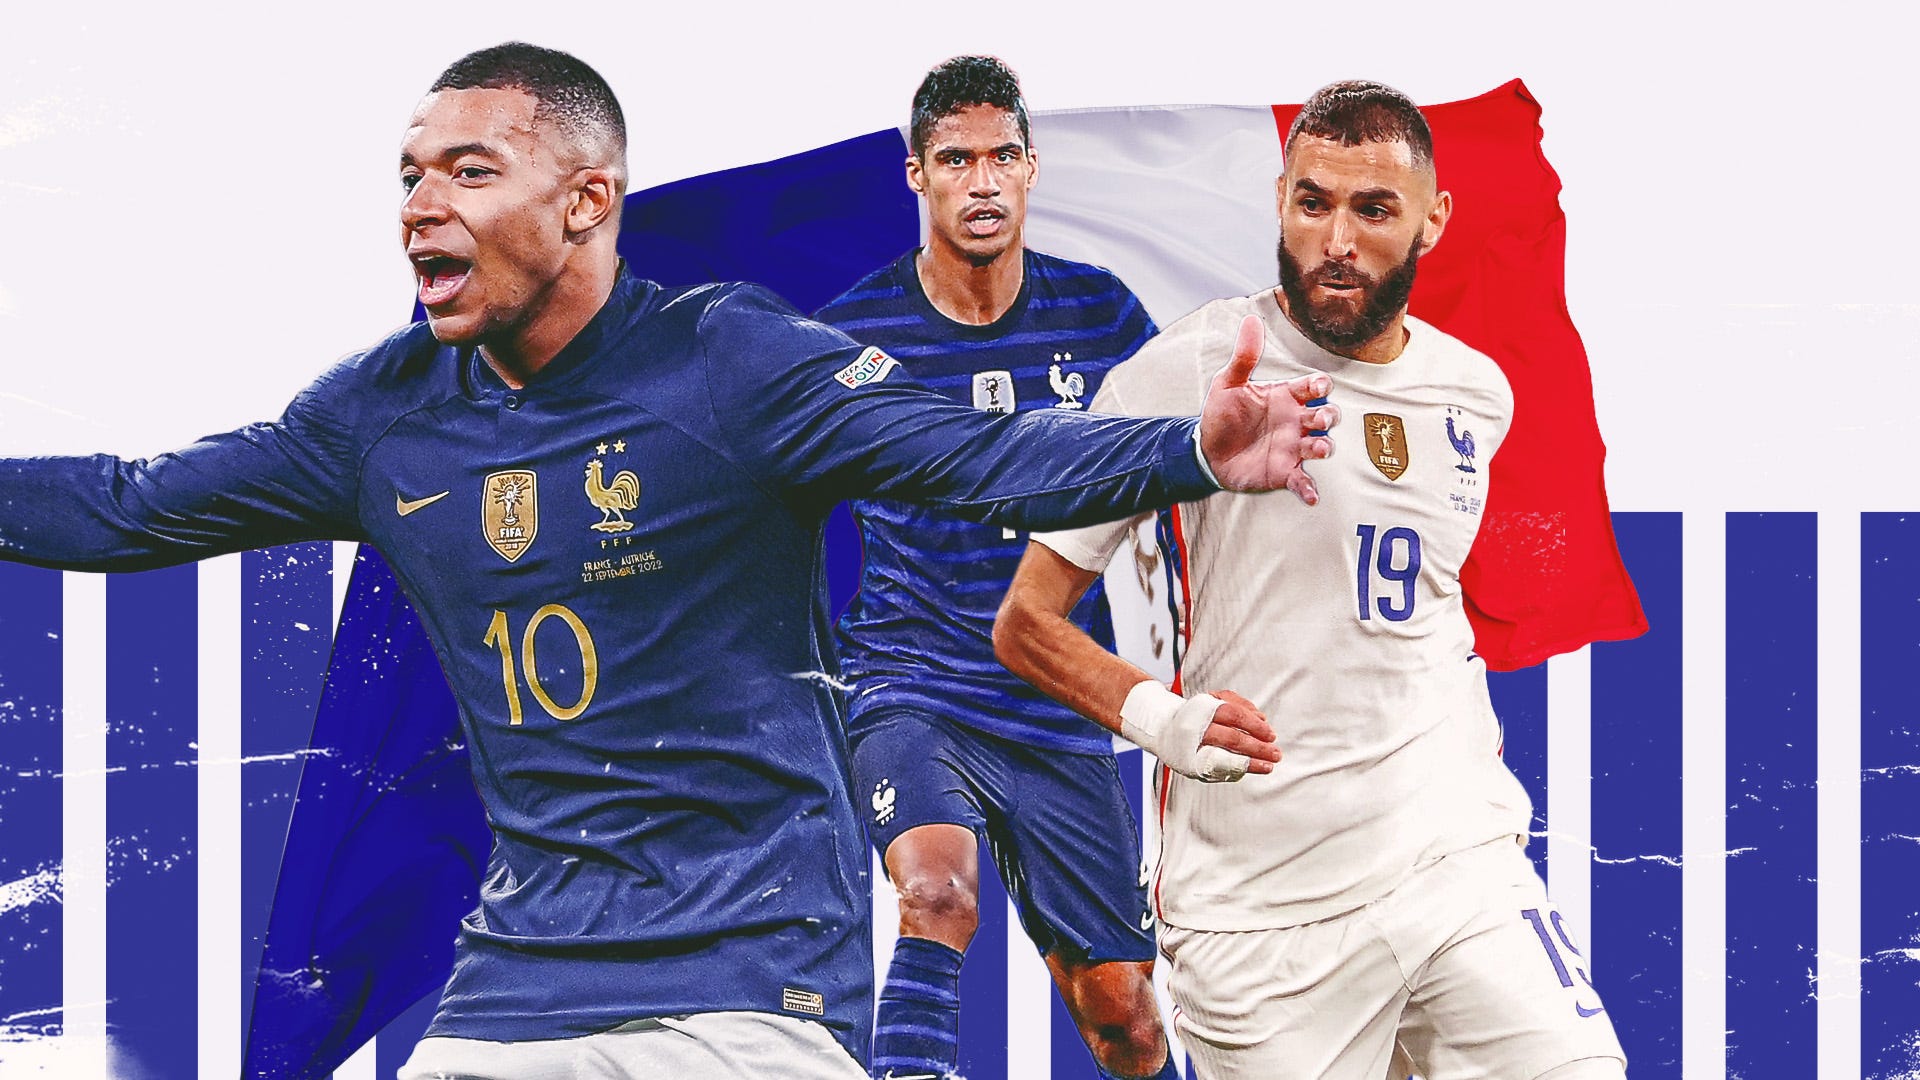 Ai là những thủ môn được lựa chọn vào danh sách cầu thủ ĐT Pháp?
